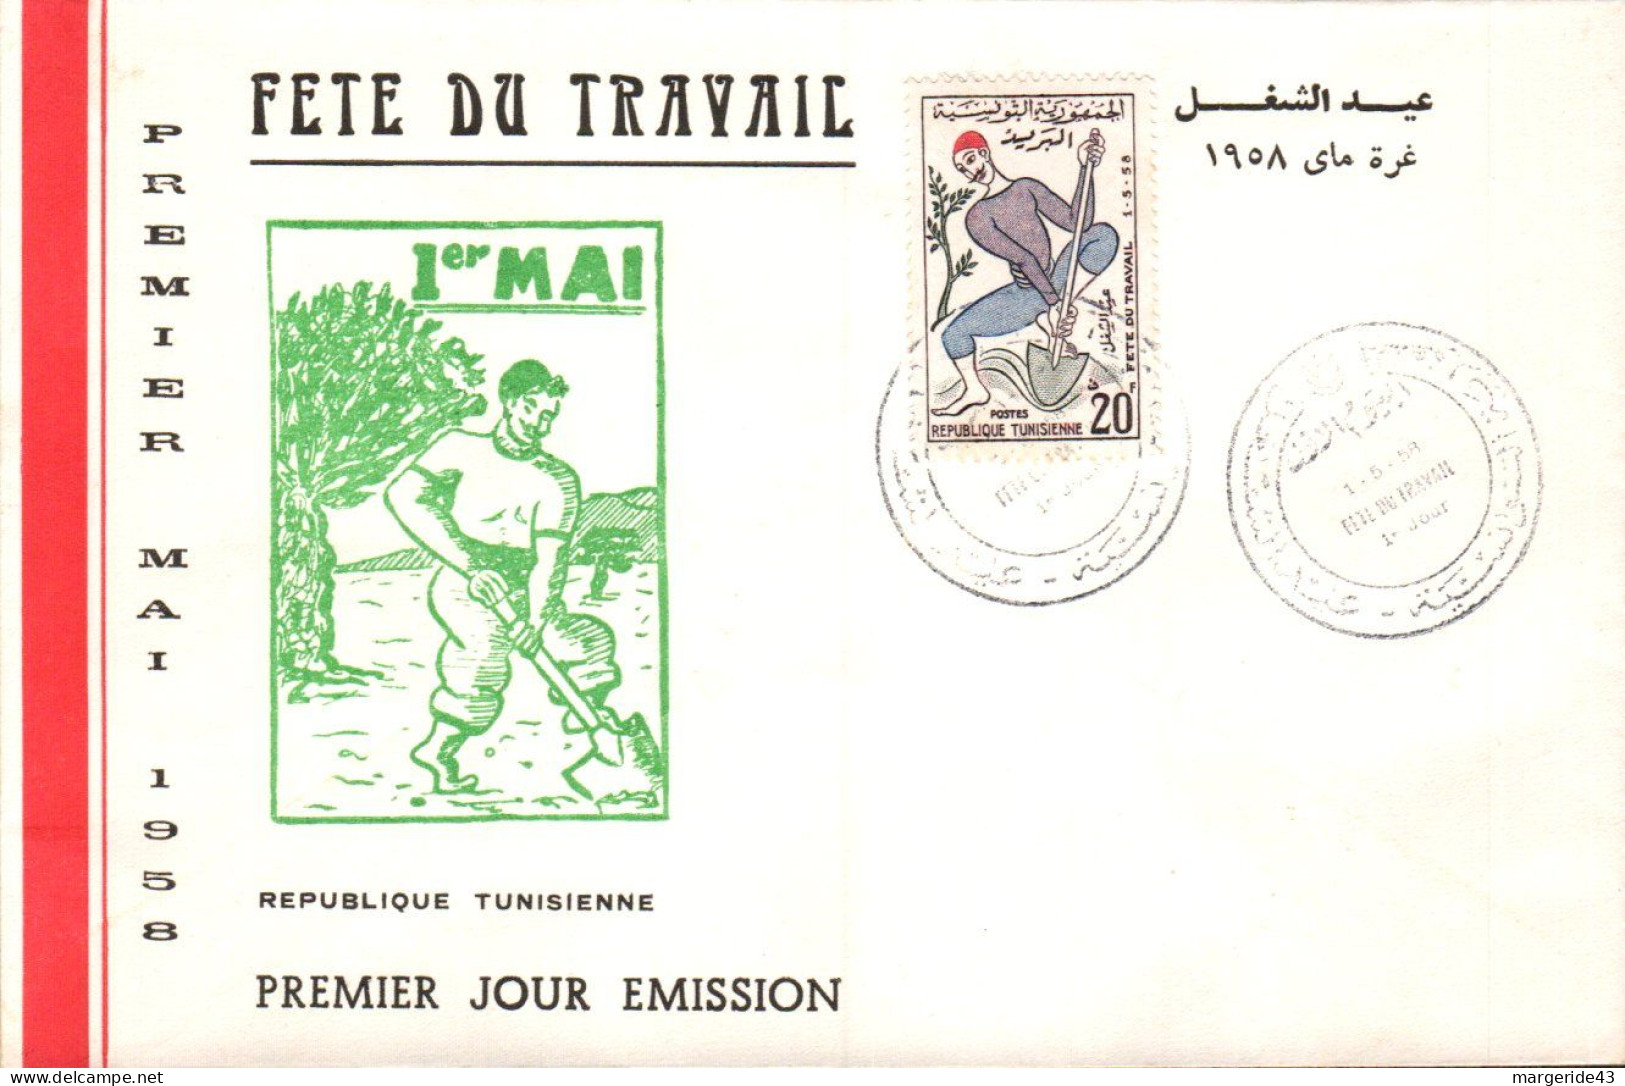 TUNISIE FDC 1958 FETE DU TRAVAIL - Tunesien (1956-...)